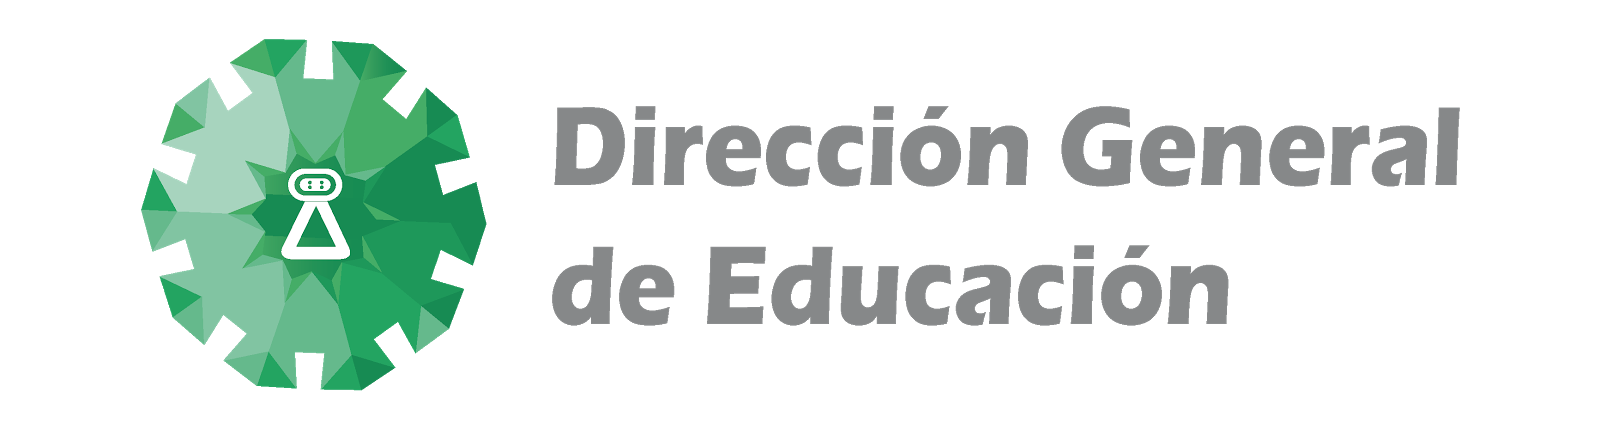 Actividades Educativas en Chimalhuacán, Estado de México